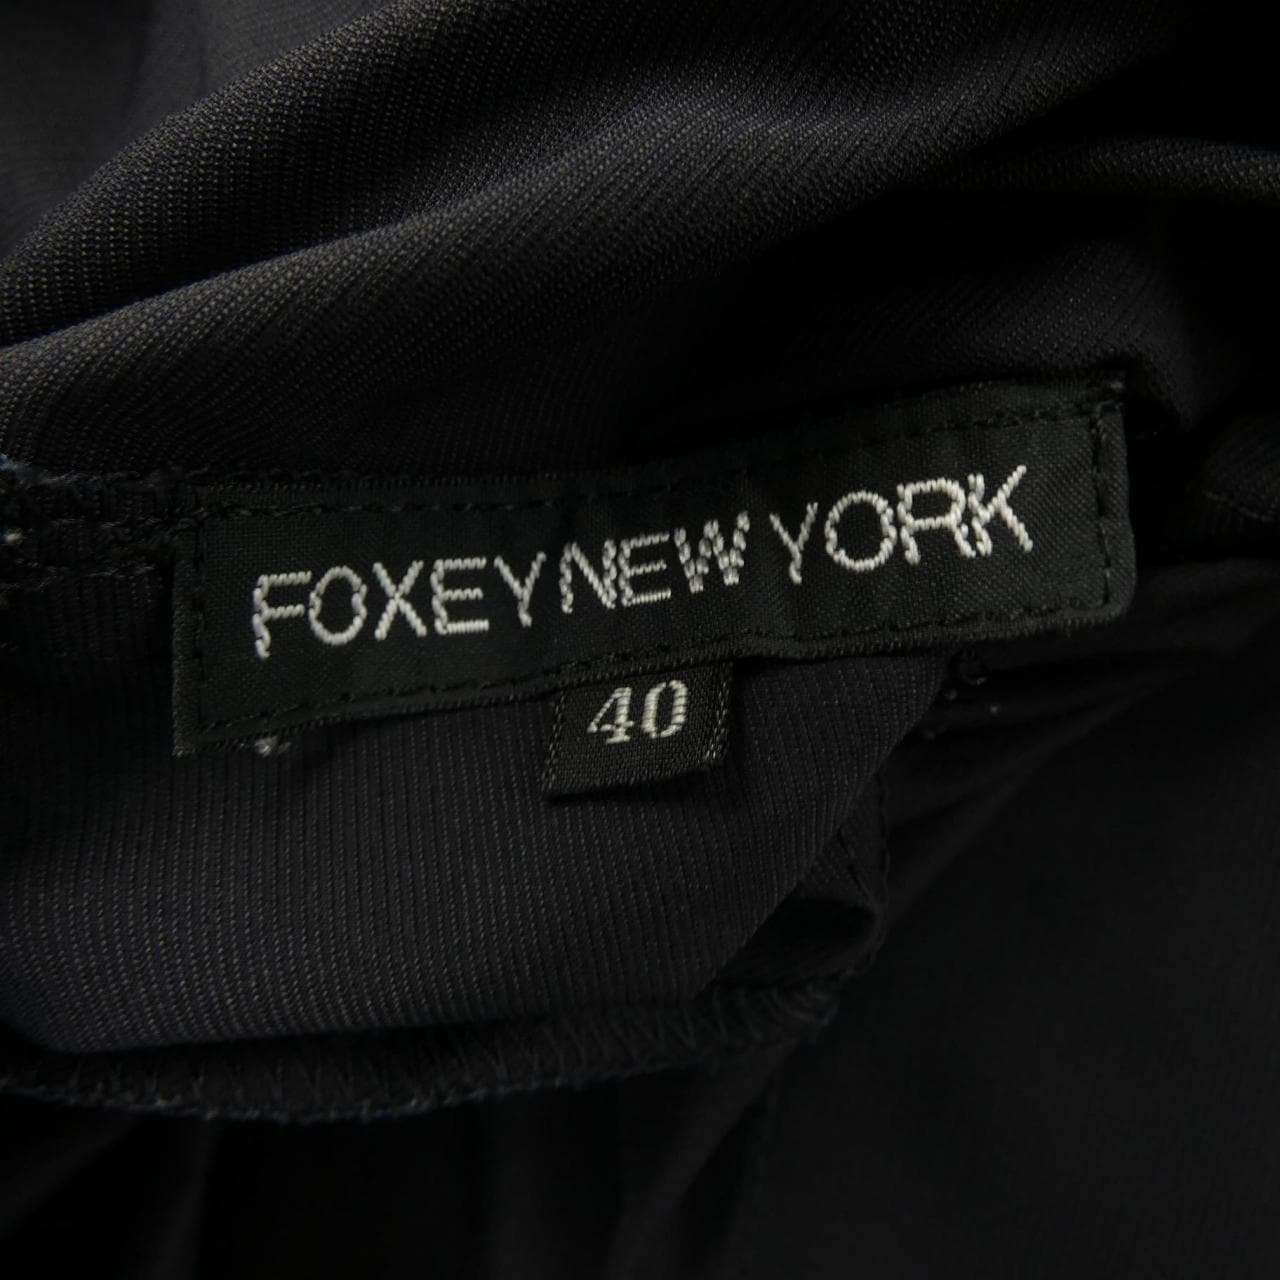 フォクシーニューヨーク FOXEY NEW YORK コート